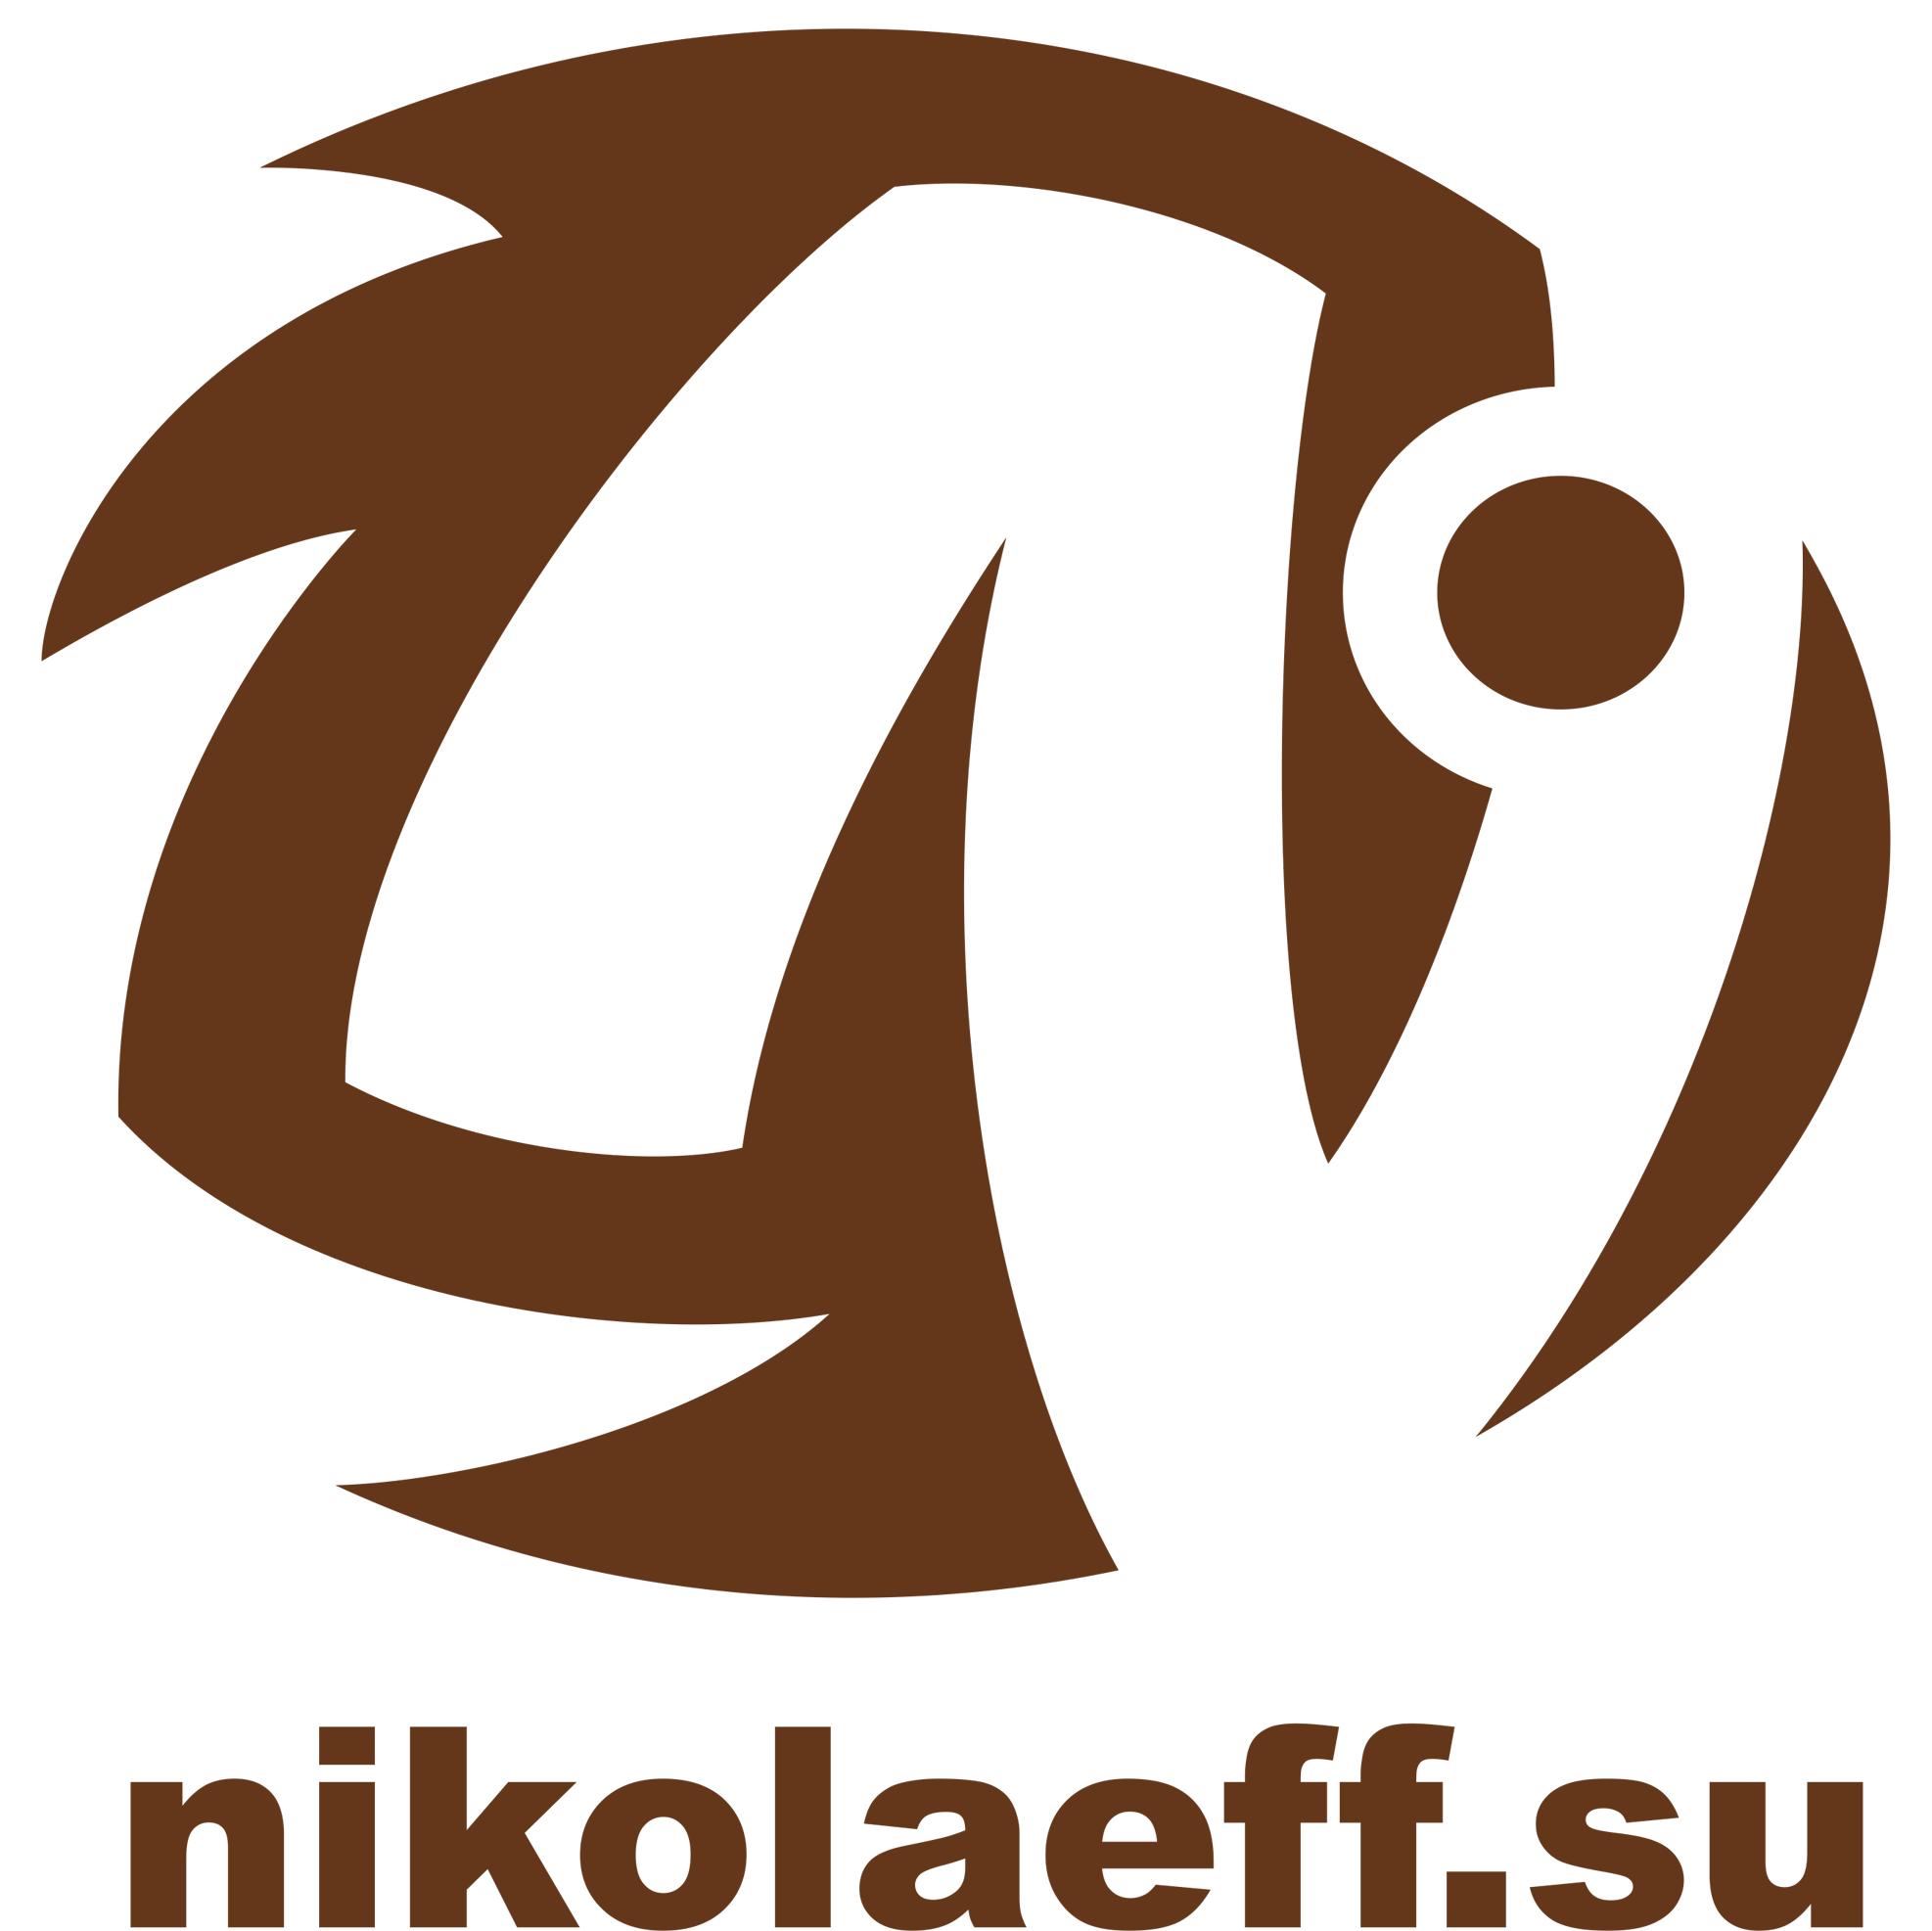 NikolaeffSu